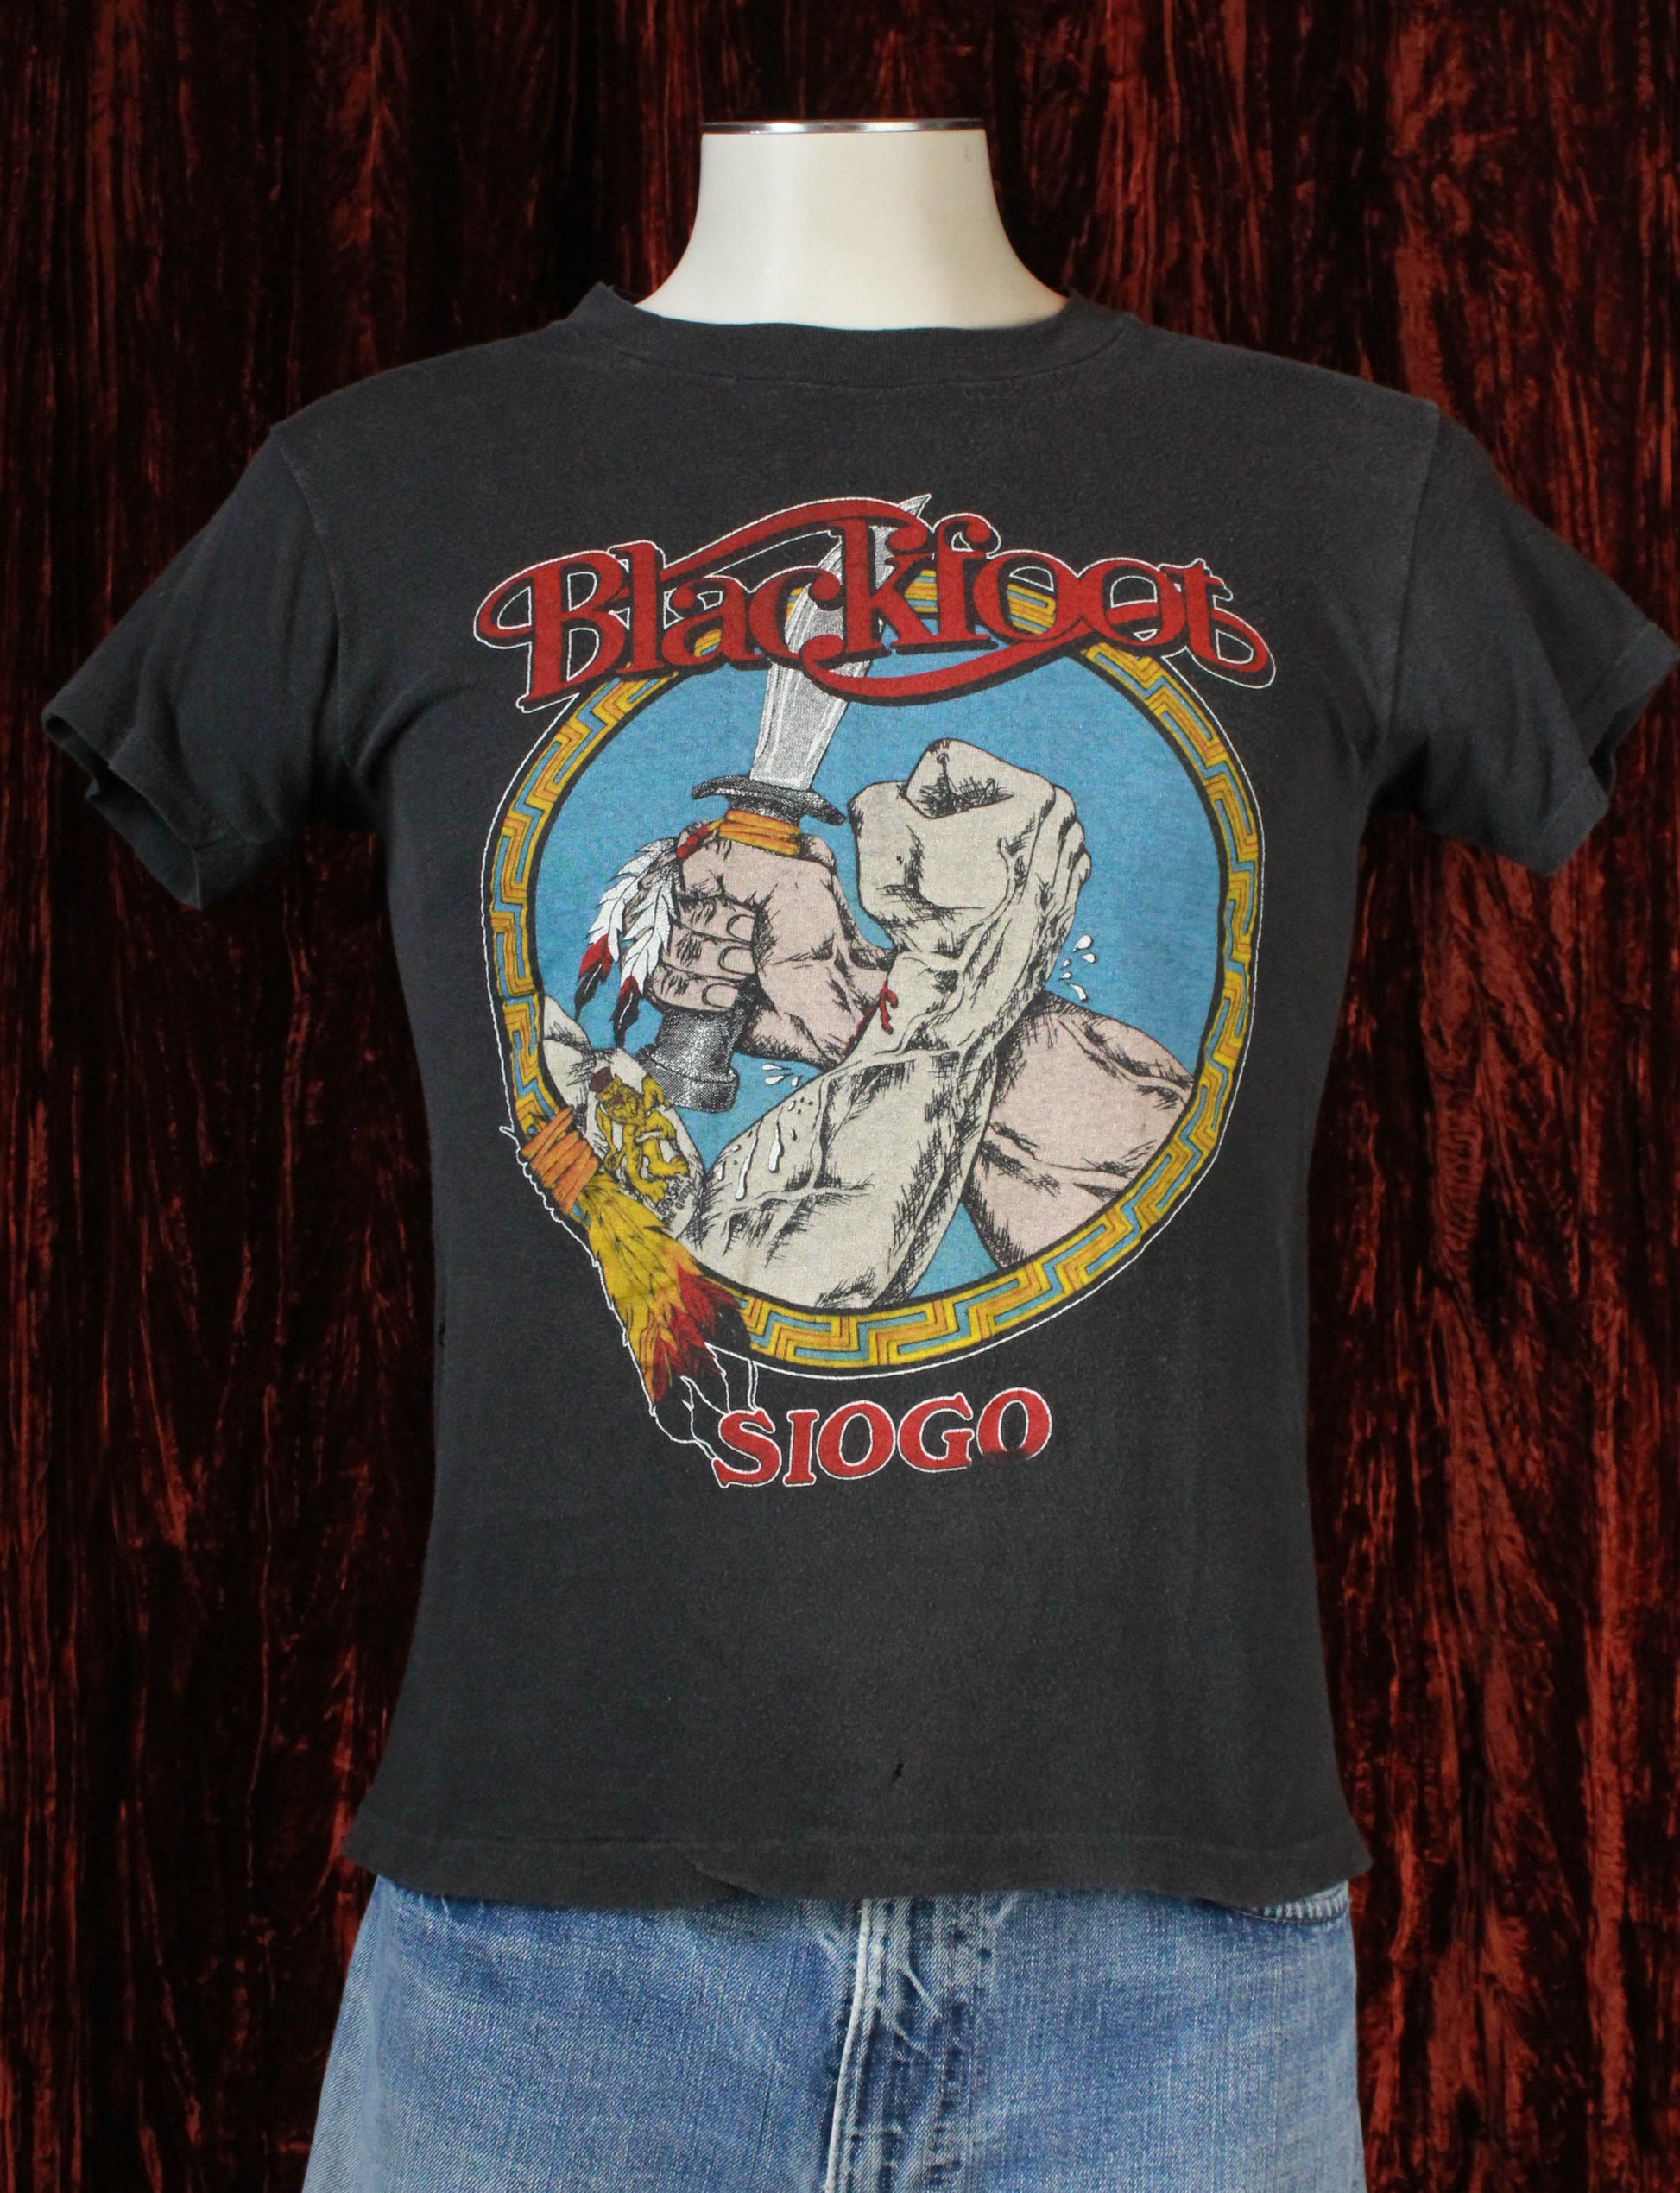 Vintage Blackfoot Concert T Shirt 1983-88 Siogo - Medium